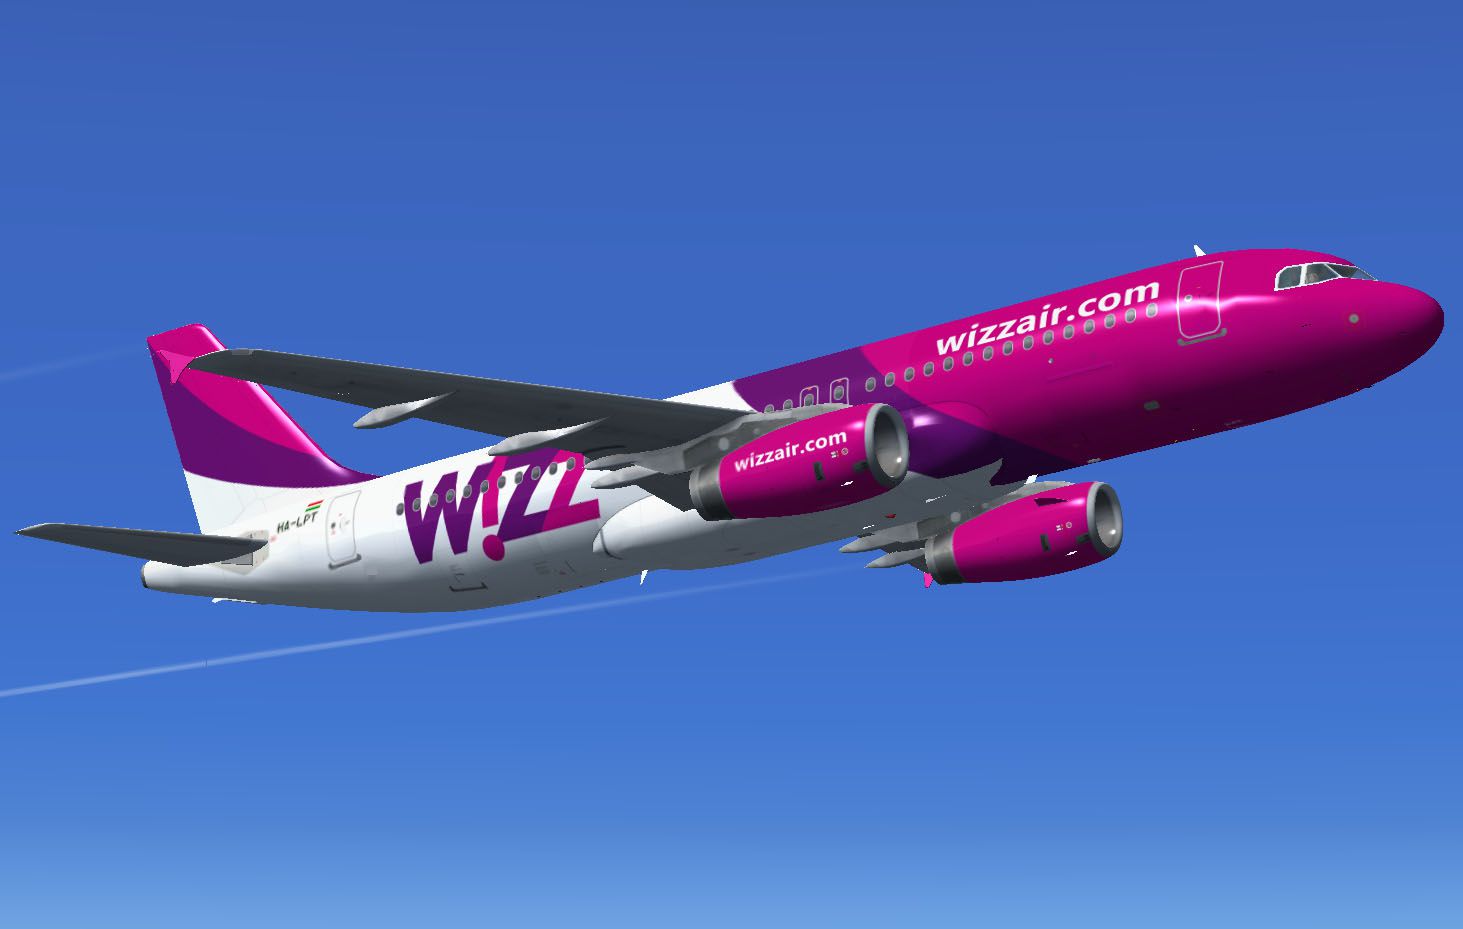 Nova pravila za prtljag u WizzAir-u: Bez doplate samo ranac